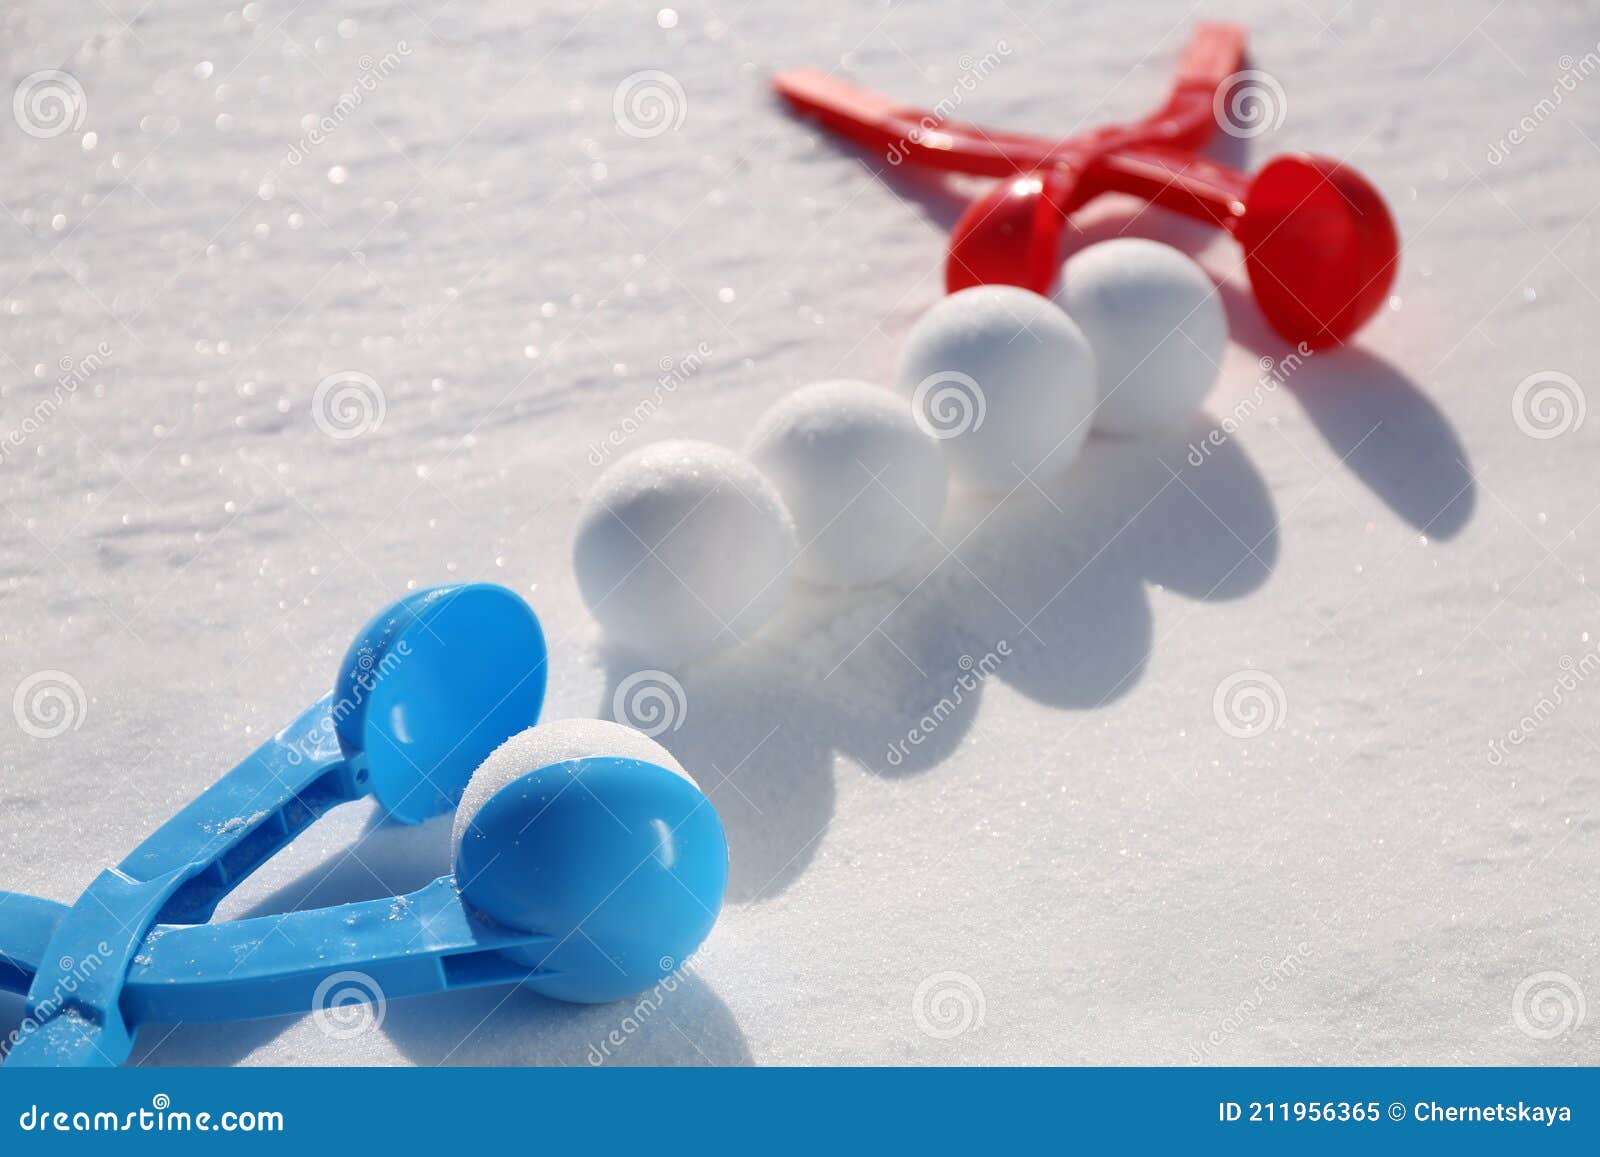 Rubriek groei overschot Sneeuwballen En Plastic Gereedschap in De Openlucht Op Winterdag Stock  Afbeelding - Image of kind, nave: 211956365